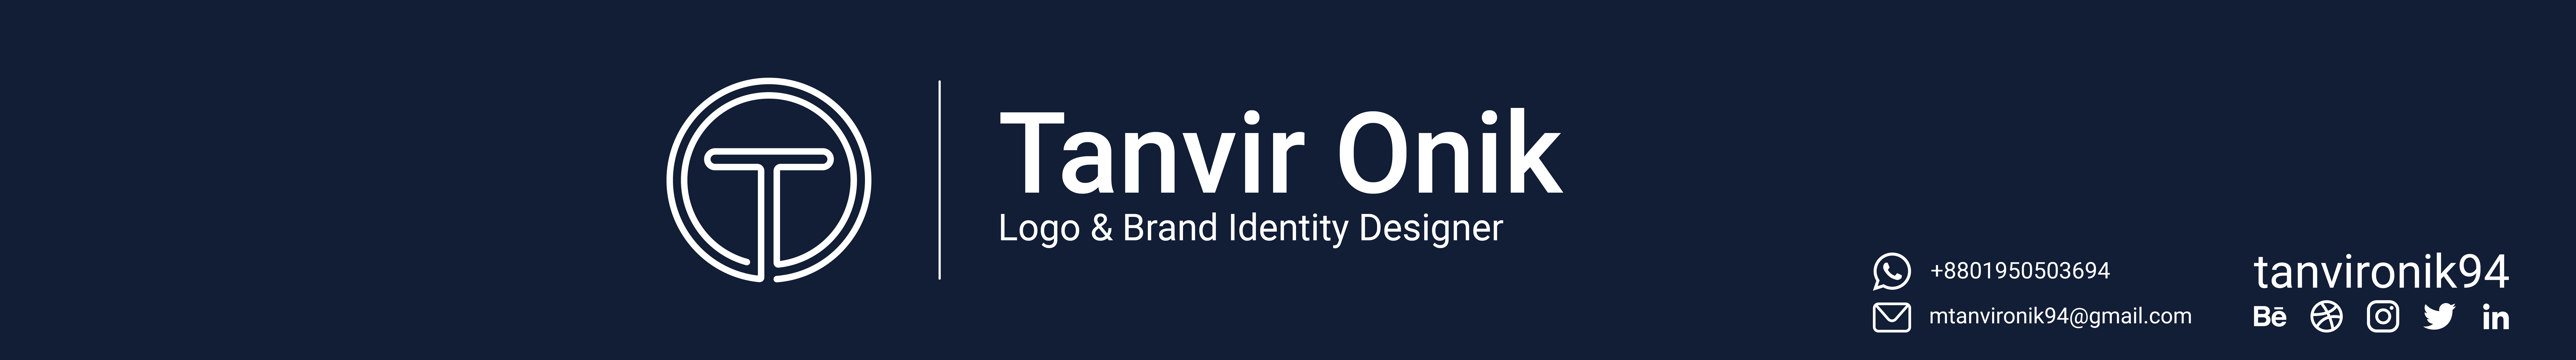 tanvir onik94's profile banner